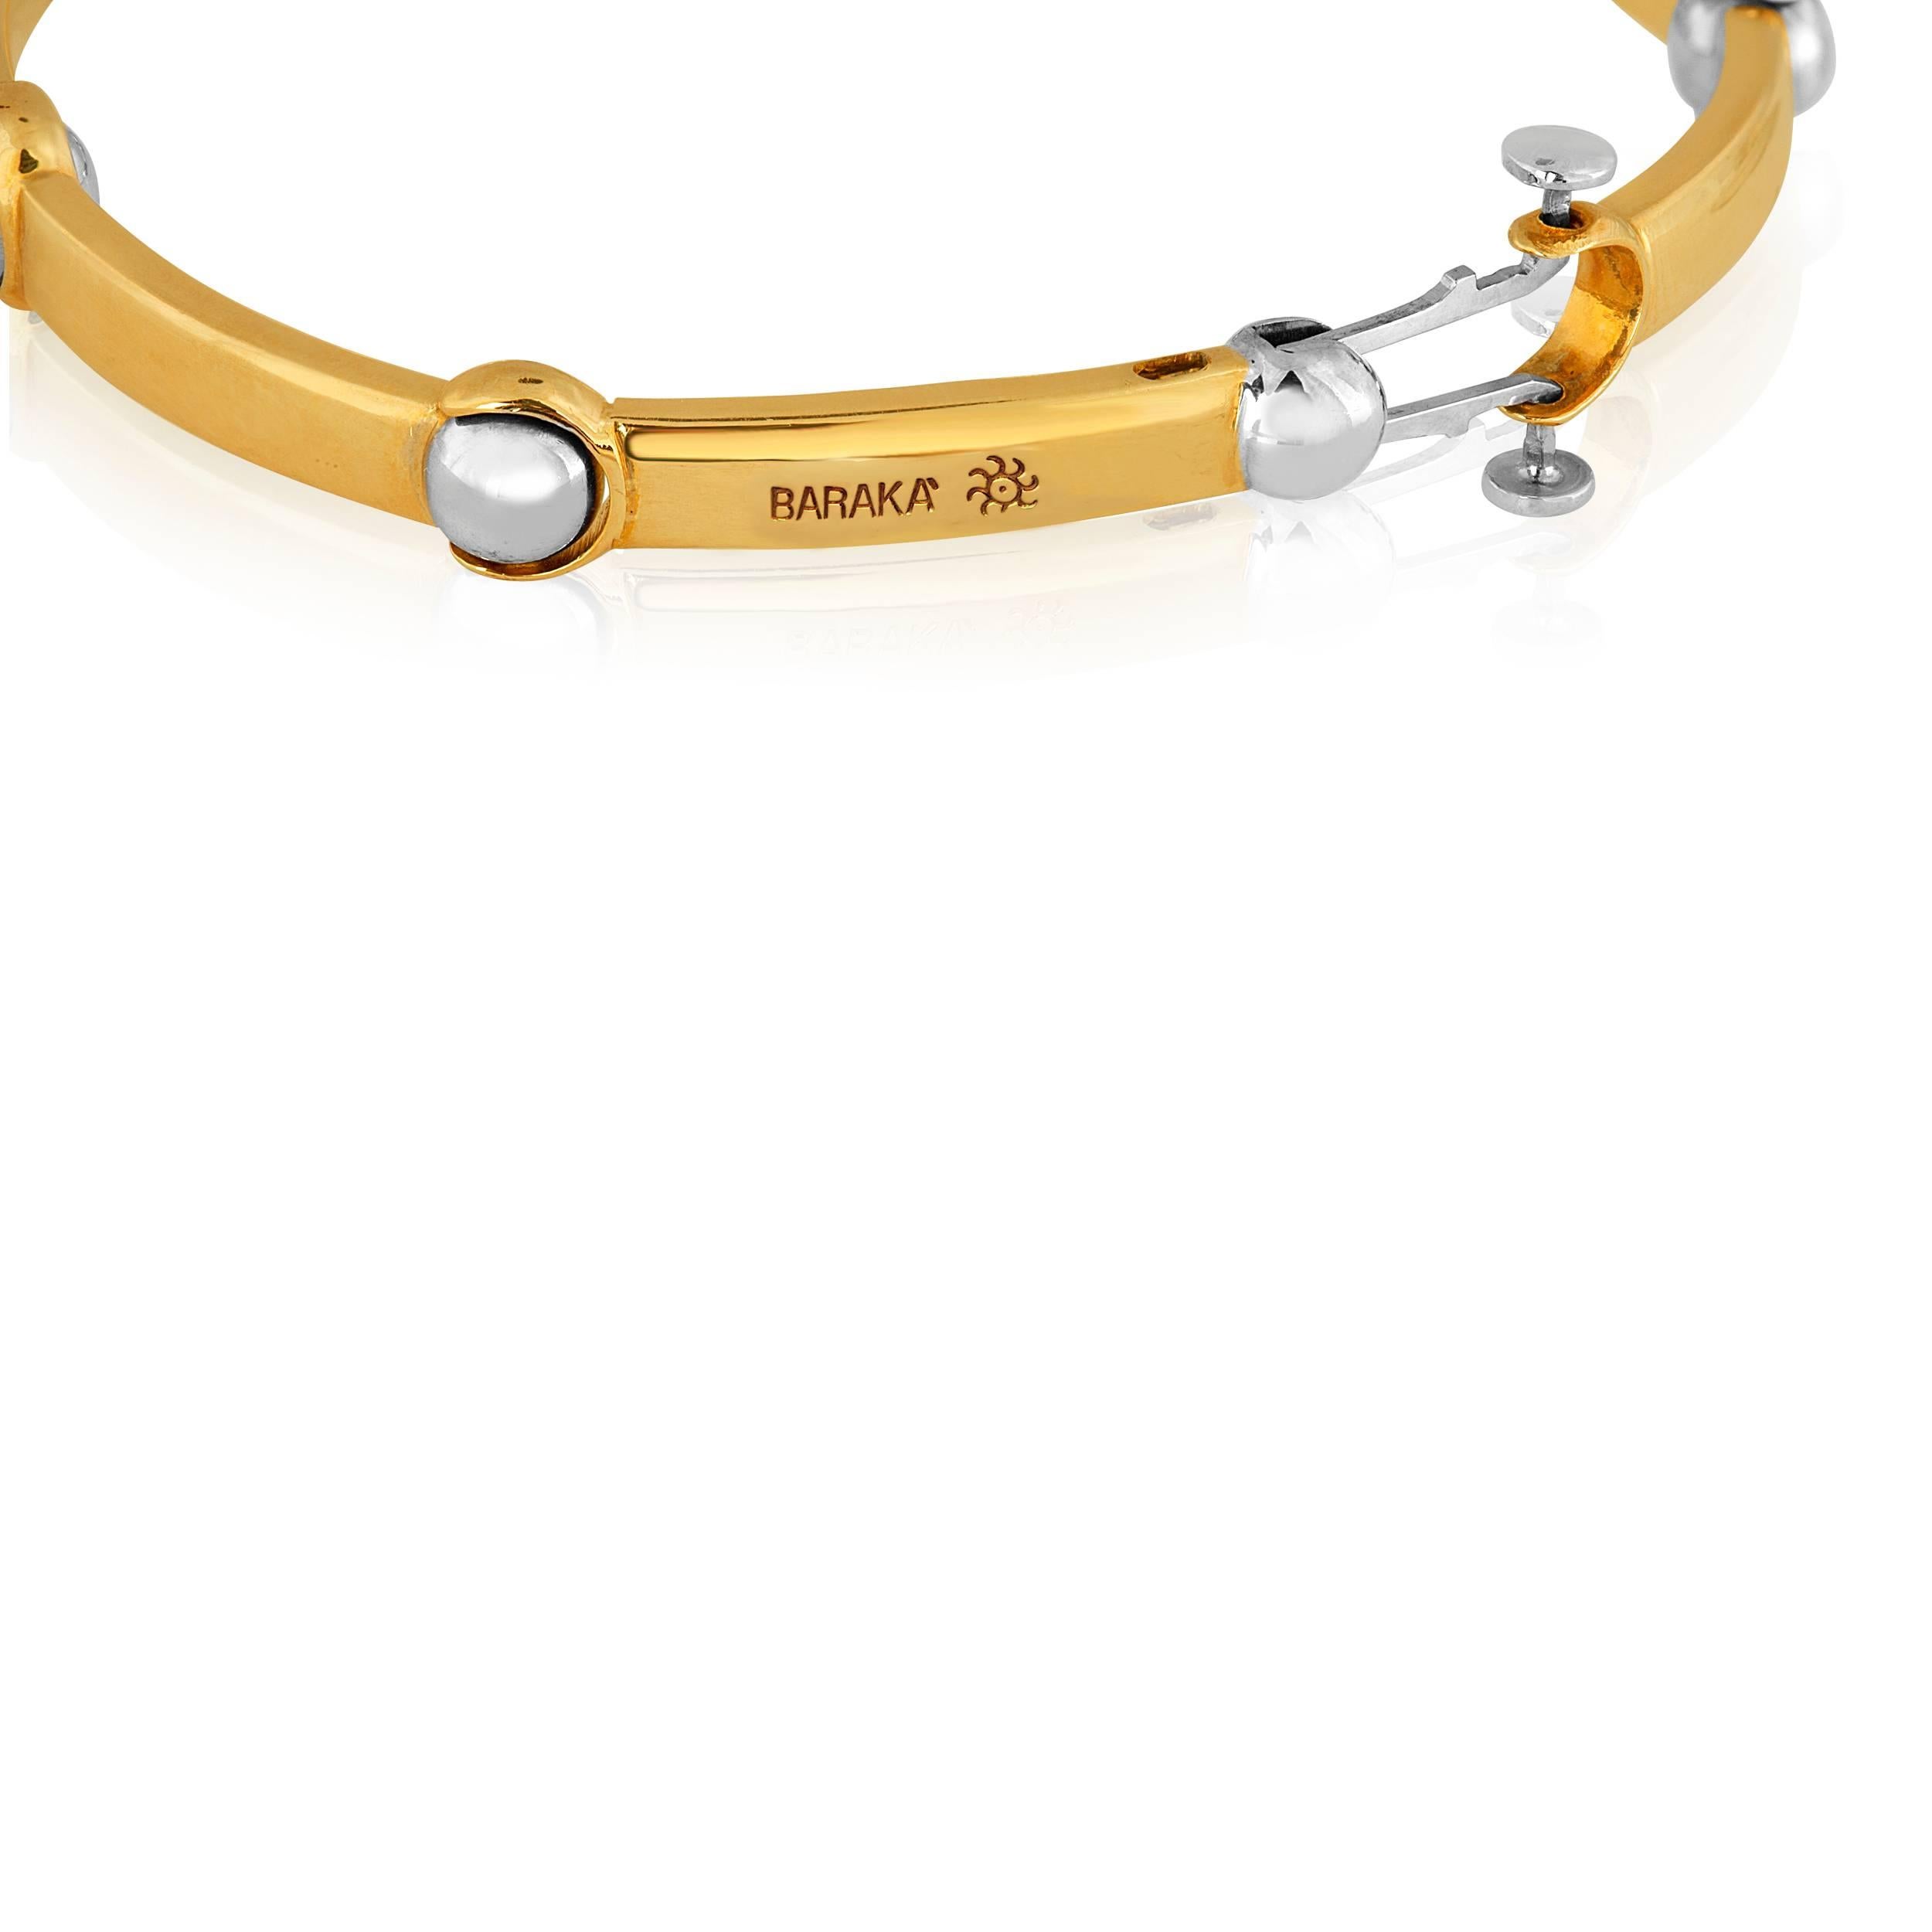 Magnifique bracelet BARAKA bicolore fabriqué en ITALIE.
Le bracelet est en or jaune et blanc 14K.
Il mesure 7,25